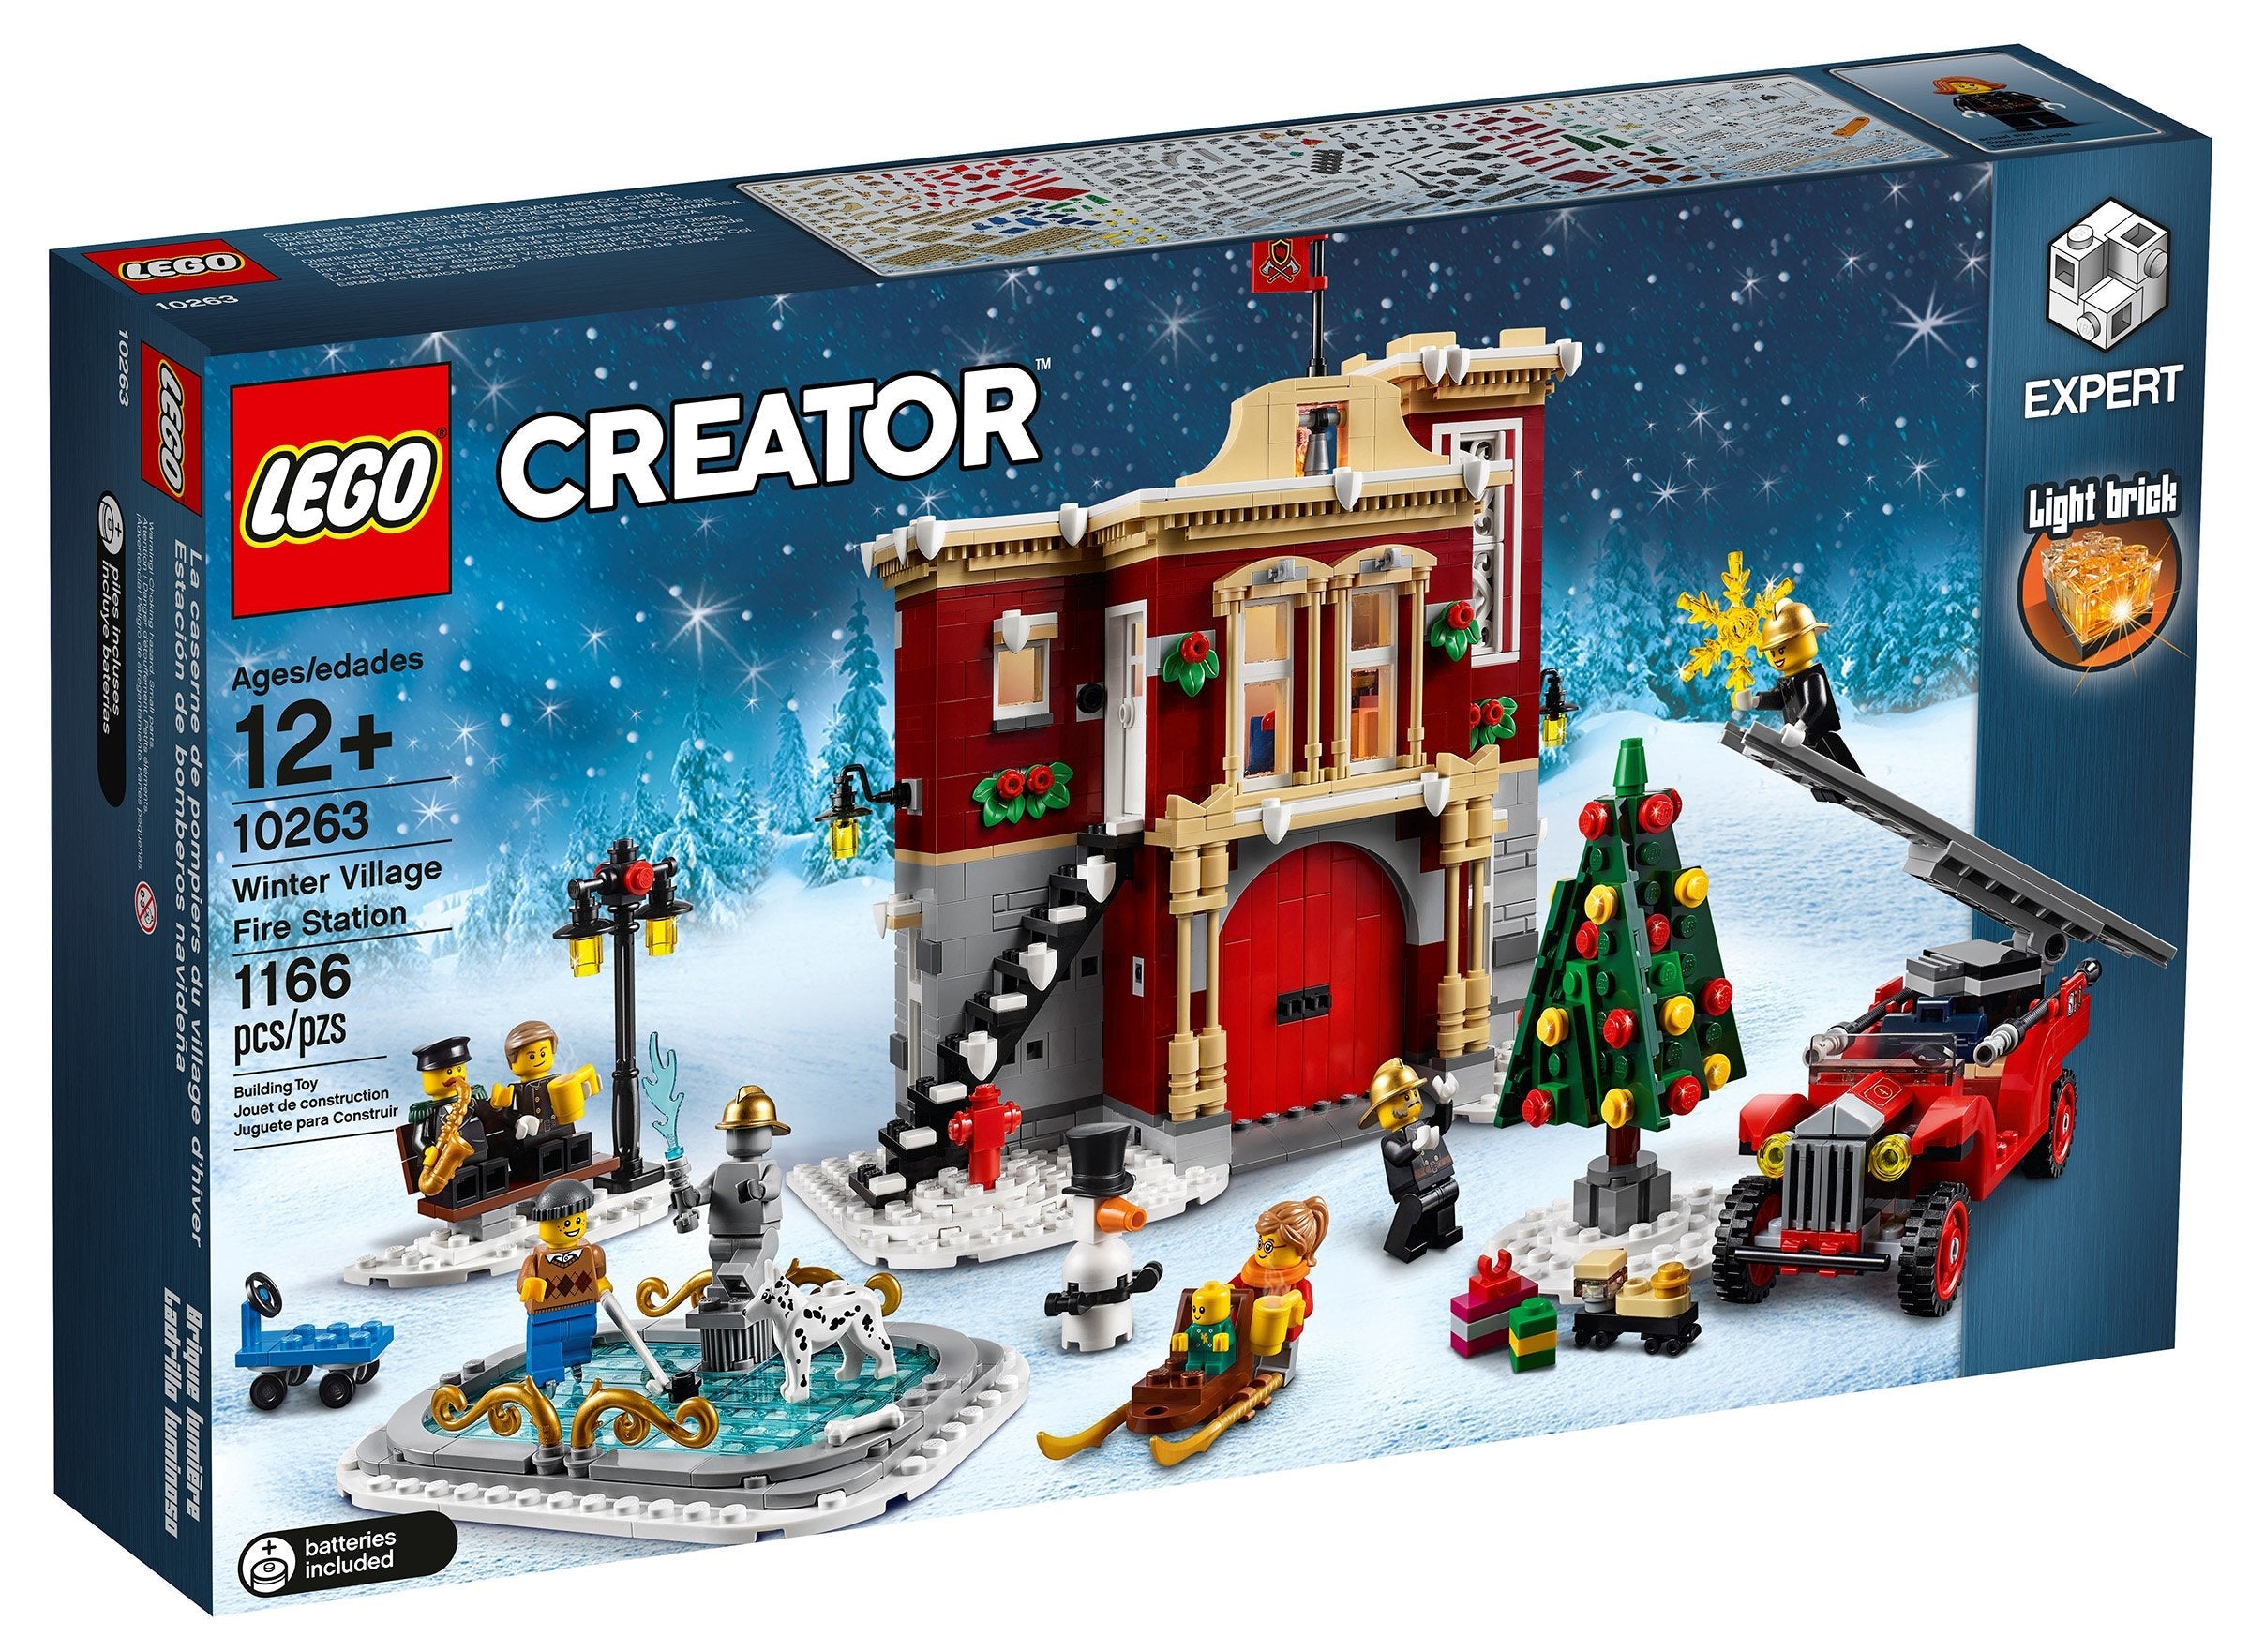 LEGO Creator Winterliche Feuerwache (10263) - im GOLDSTIEN.SHOP verfügbar mit Gratisversand ab Schweizer Lager! (5702016111811)